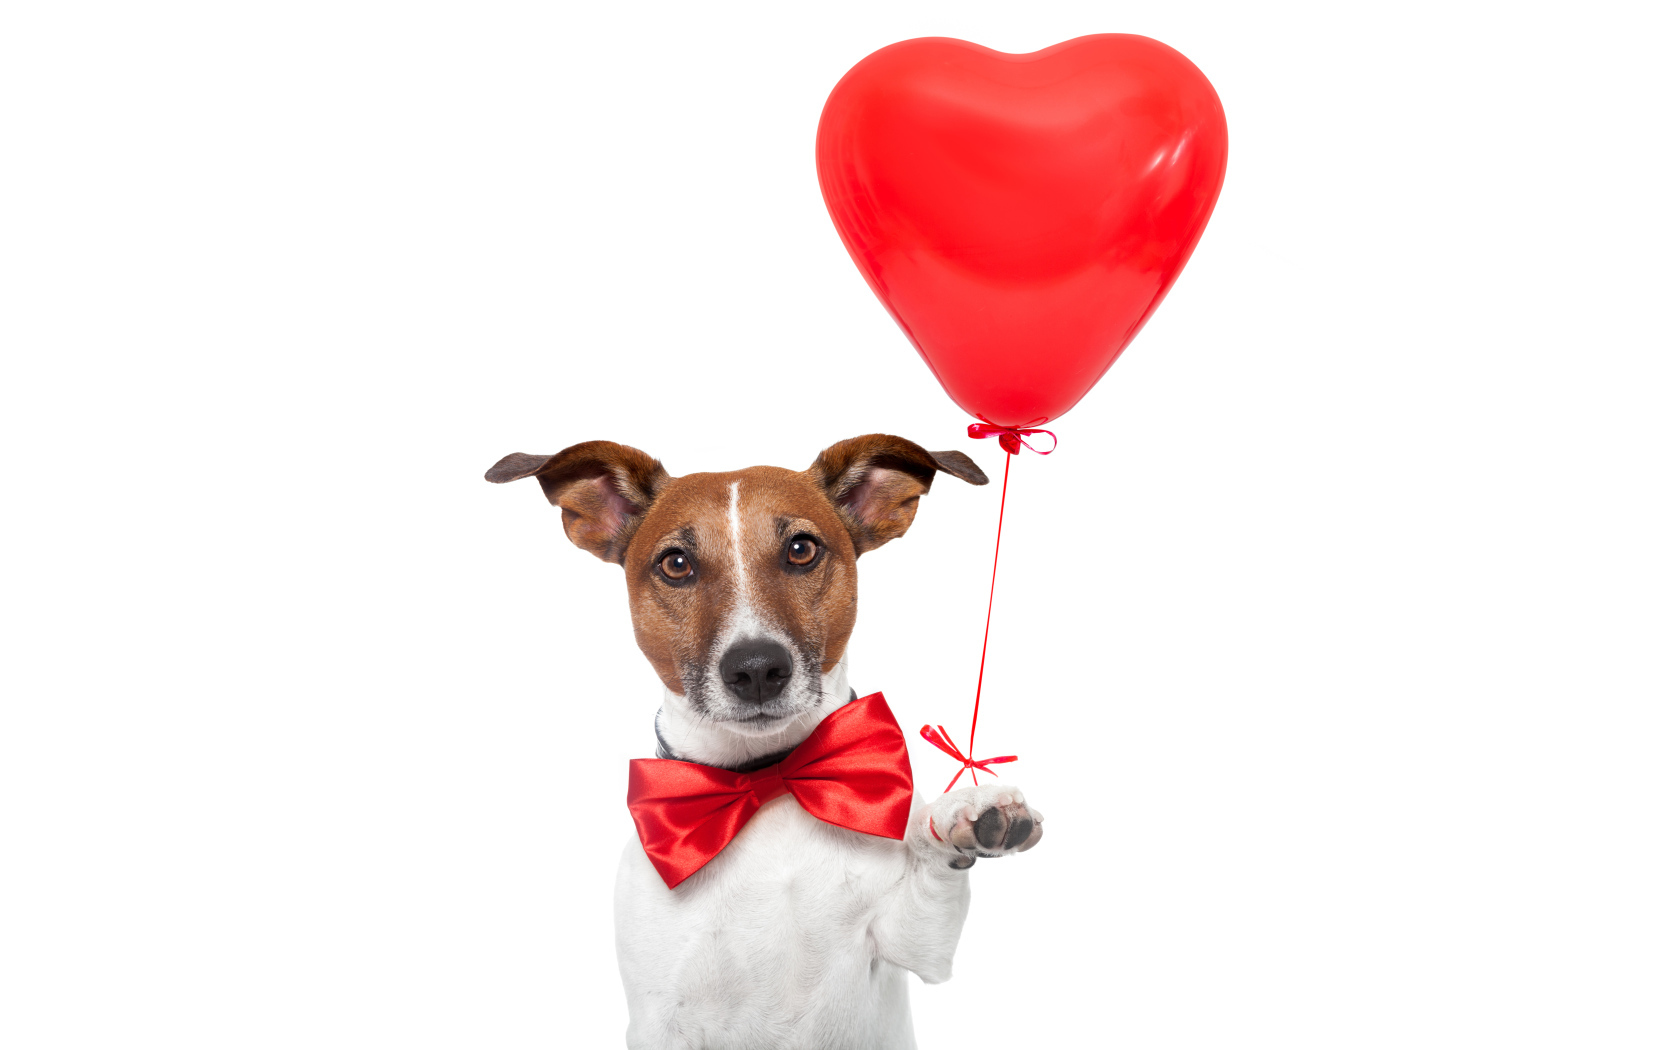 Джек-рассел-терьер с красным шариком в форме сердца на белом фоне